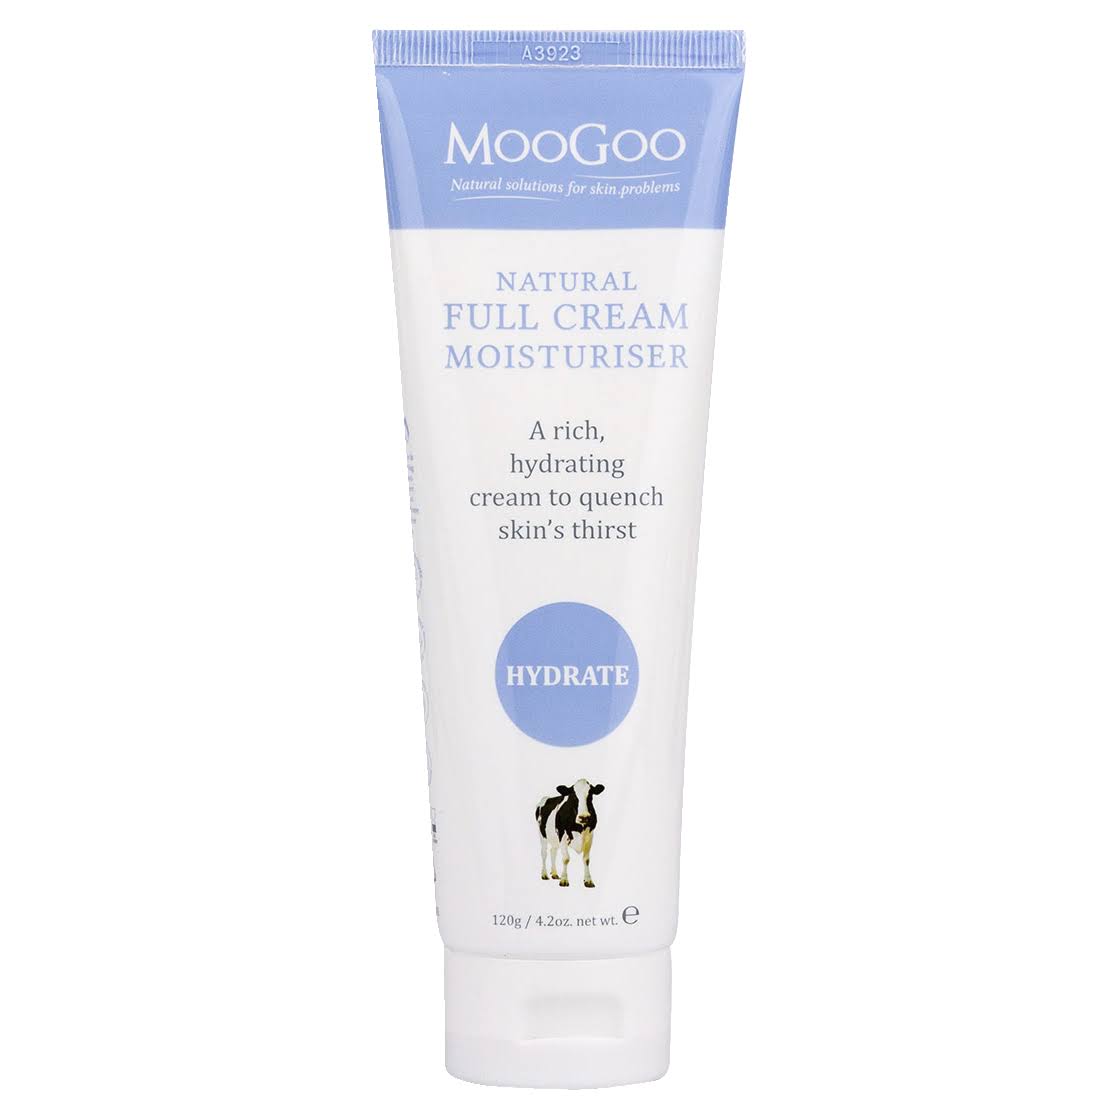 MOOGOO Full Cream 120g Moisturiser